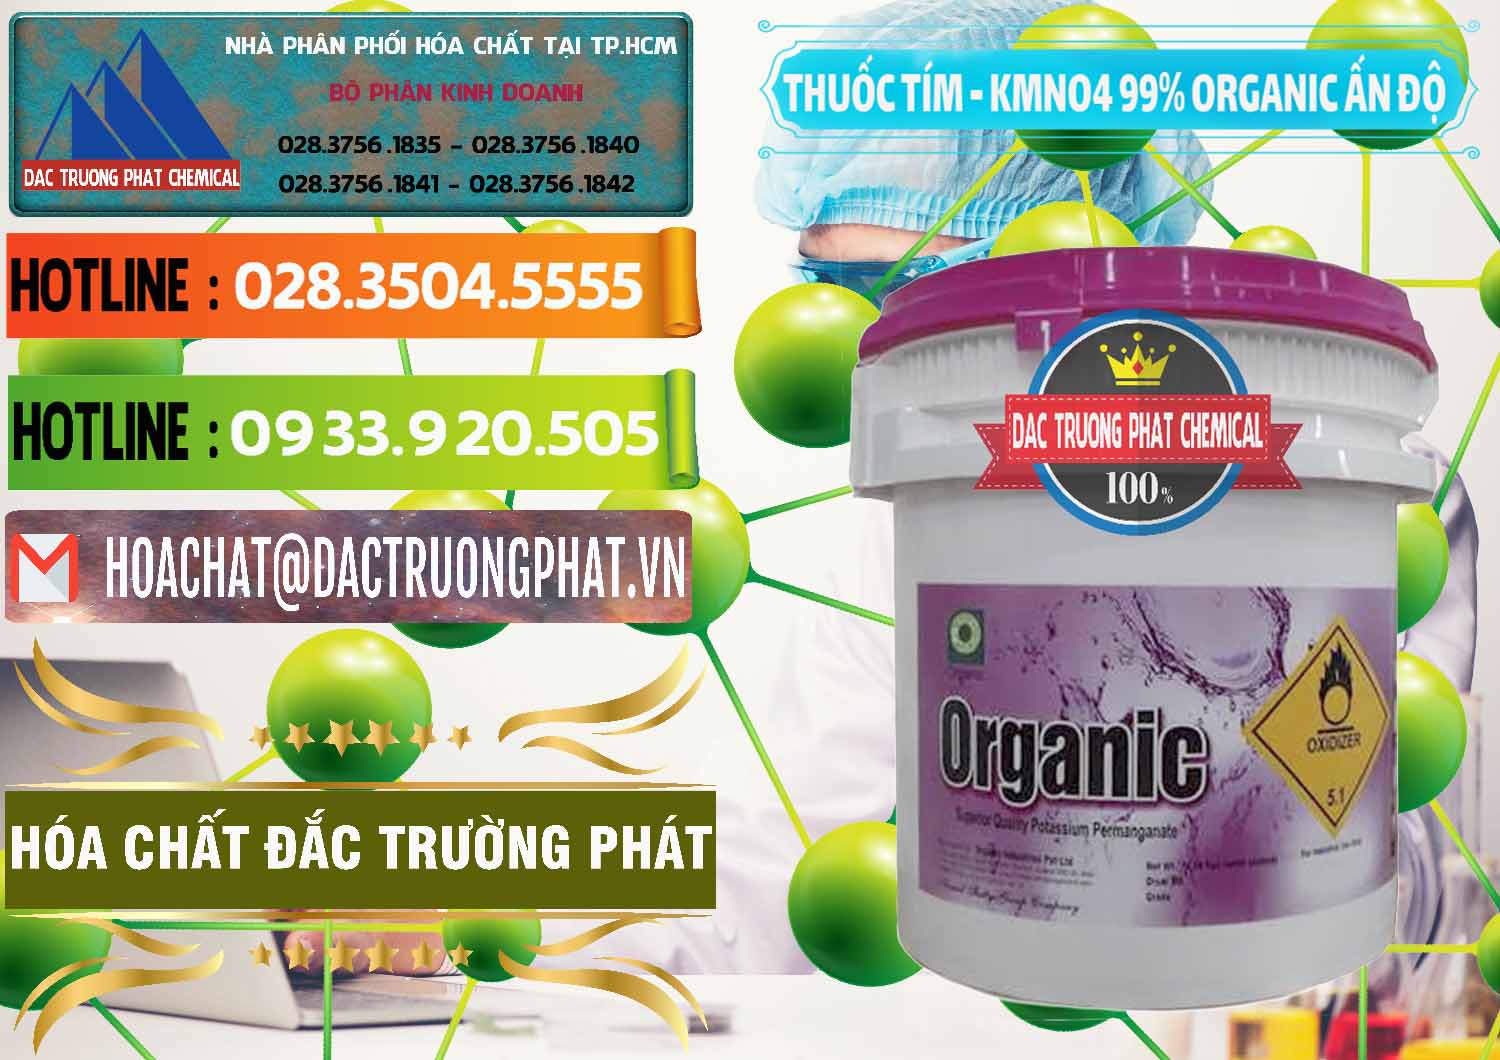 Chuyên bán ( cung cấp ) Thuốc Tím - KMNO4 99% Organic Ấn Độ India - 0216 - Cty chuyên kinh doanh - cung cấp hóa chất tại TP.HCM - cungcaphoachat.com.vn